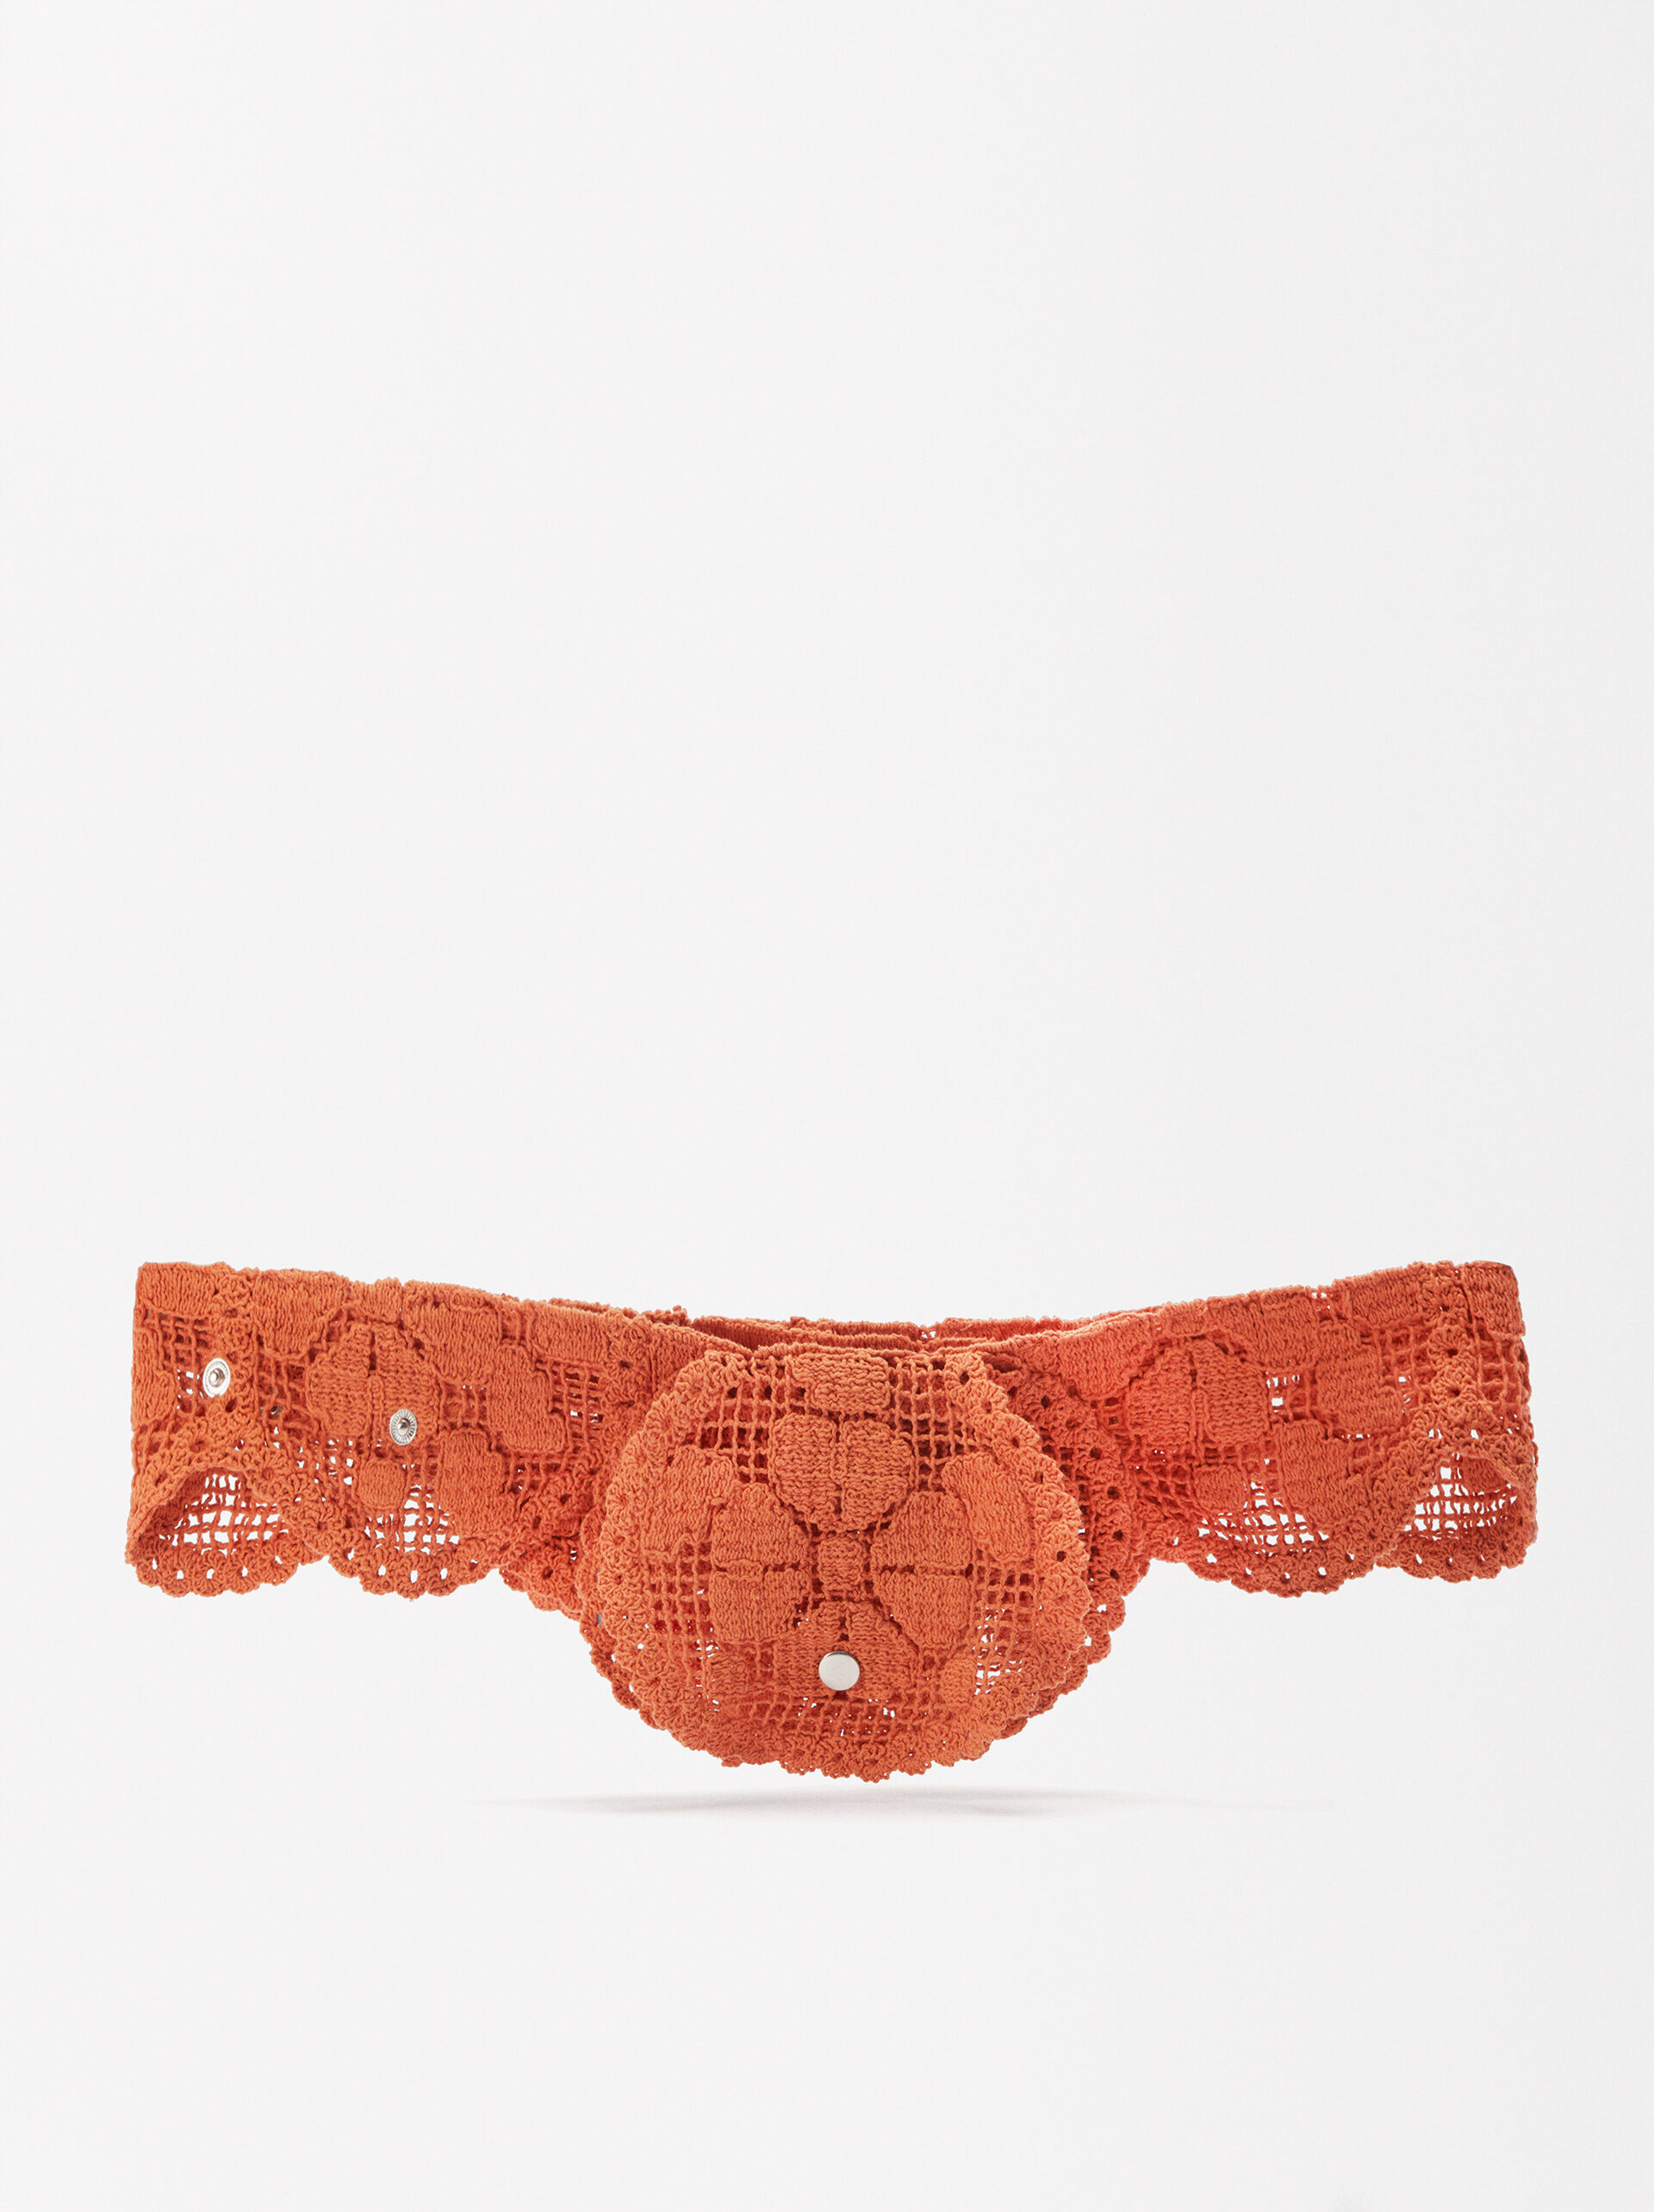 Exclusivo Online - Mala De Cintura Crochet image number 0.0